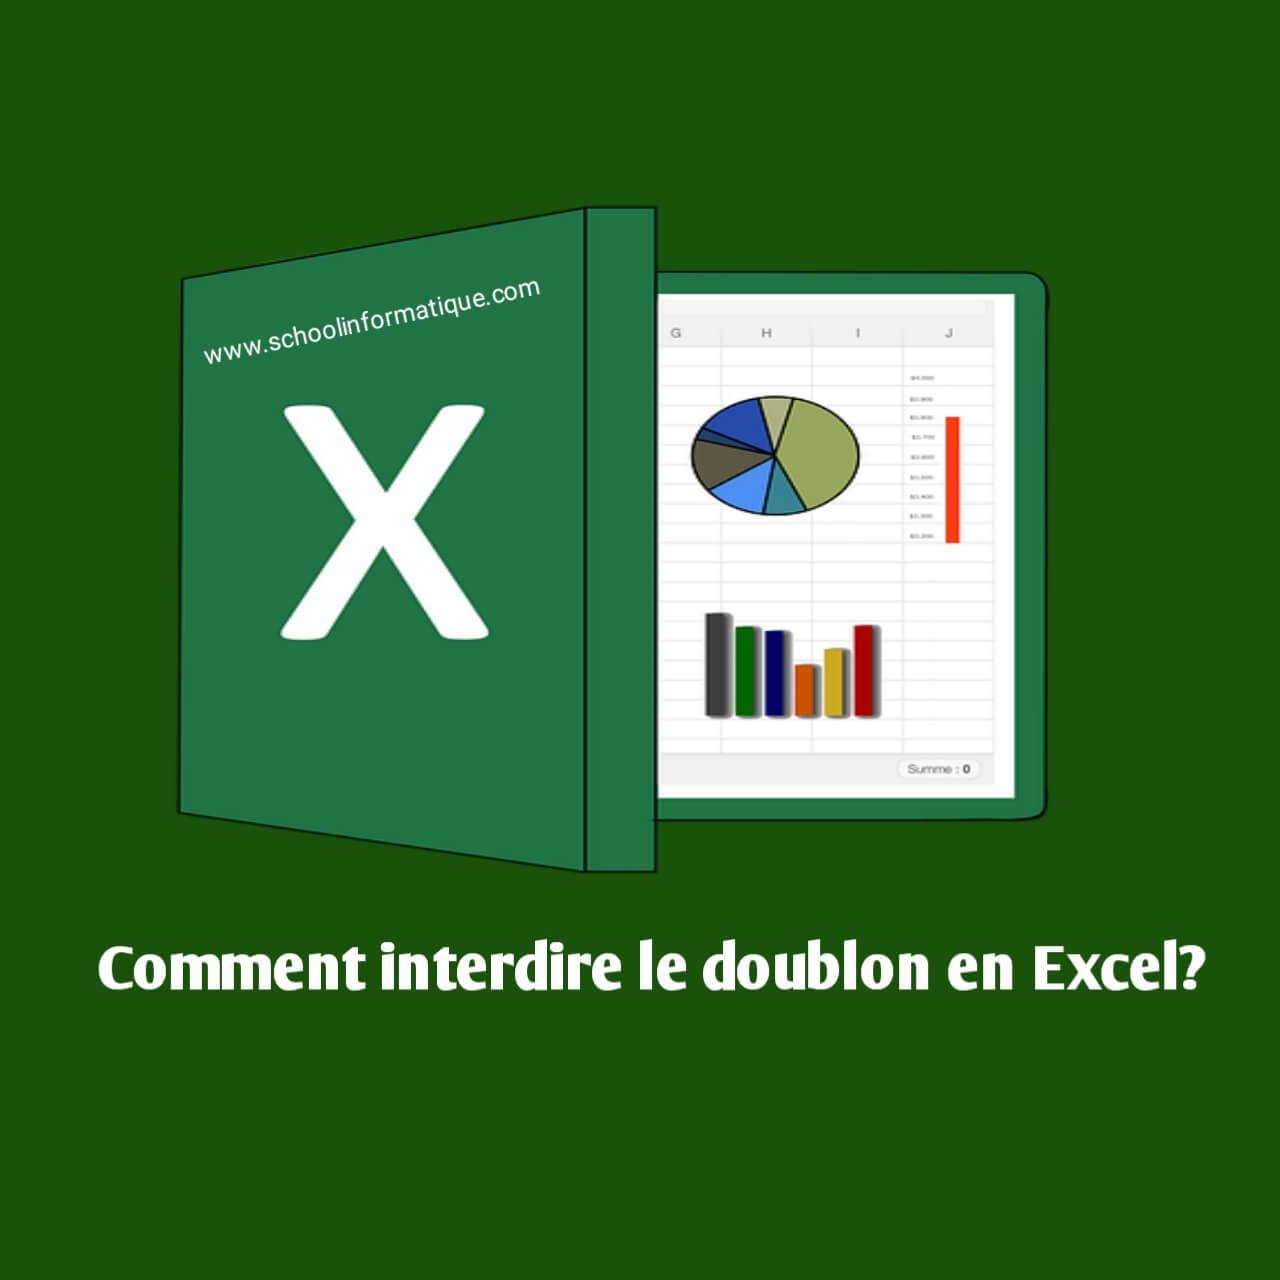 Comment Interdire le Doublon En Excel ?